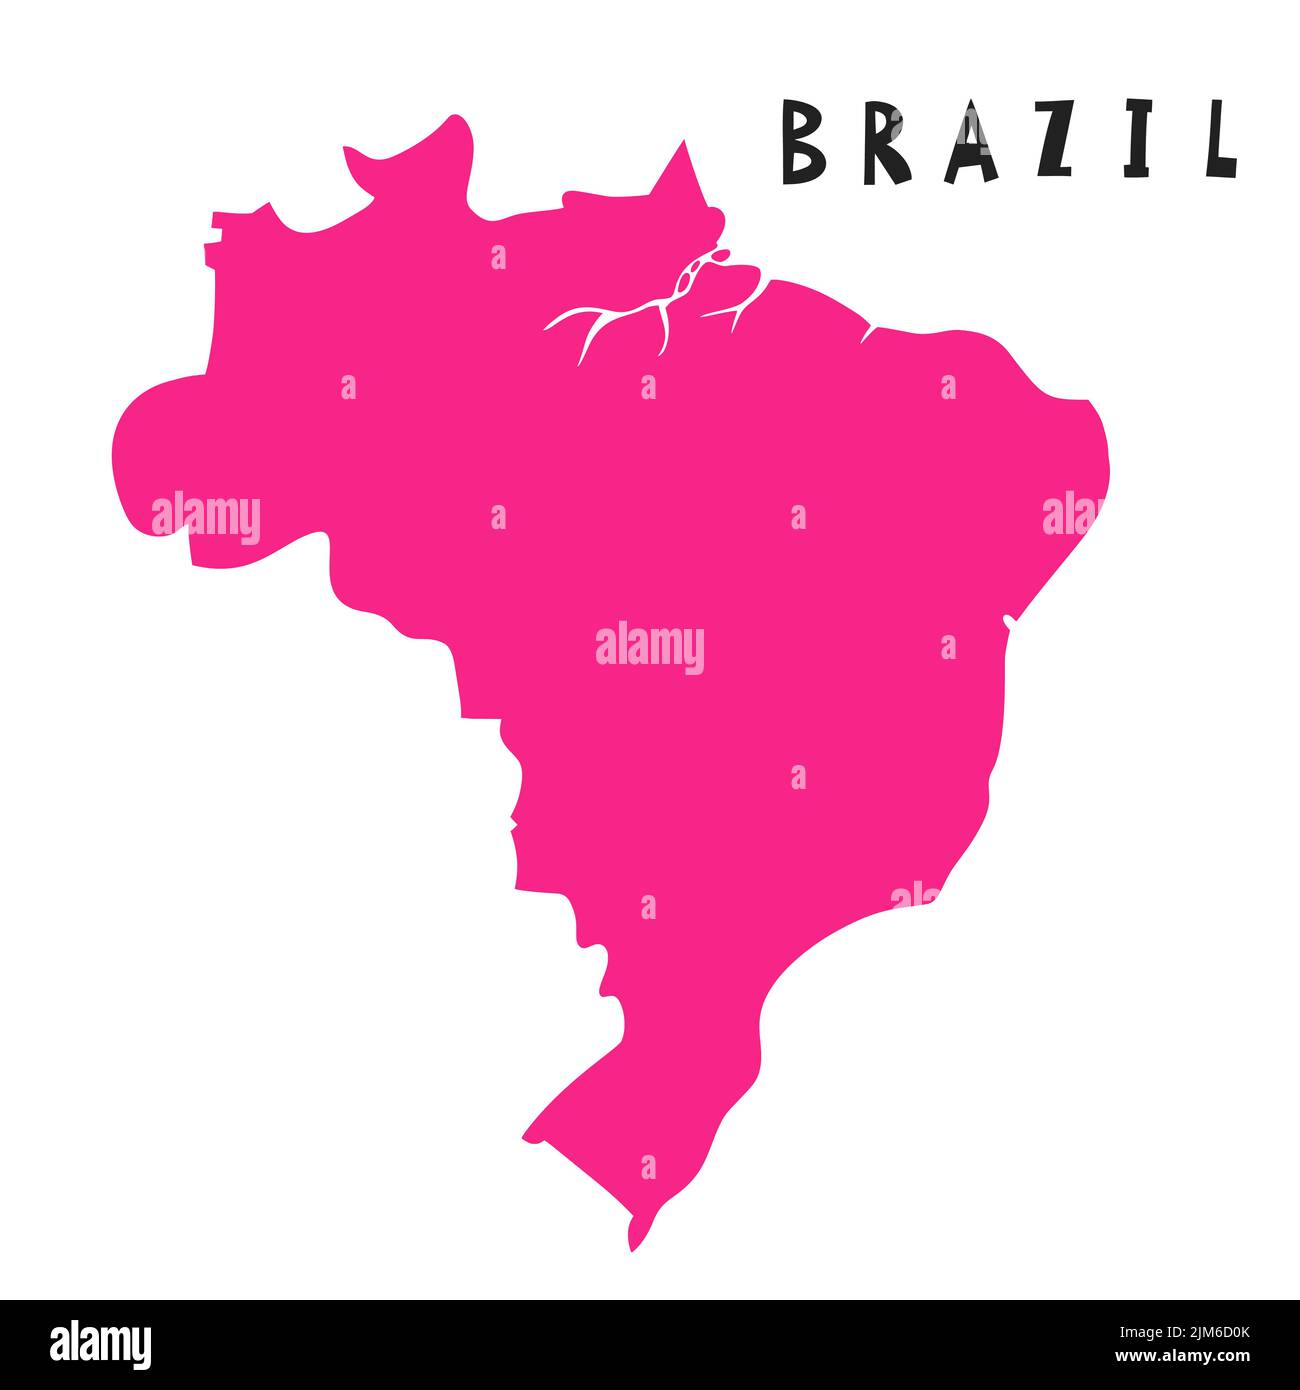 Carte stylisée du Brésil tracée à la main. Élément de carte pour l'Amérique du Sud. République fédérative du Brésil Illustration voyage Illustration de Vecteur